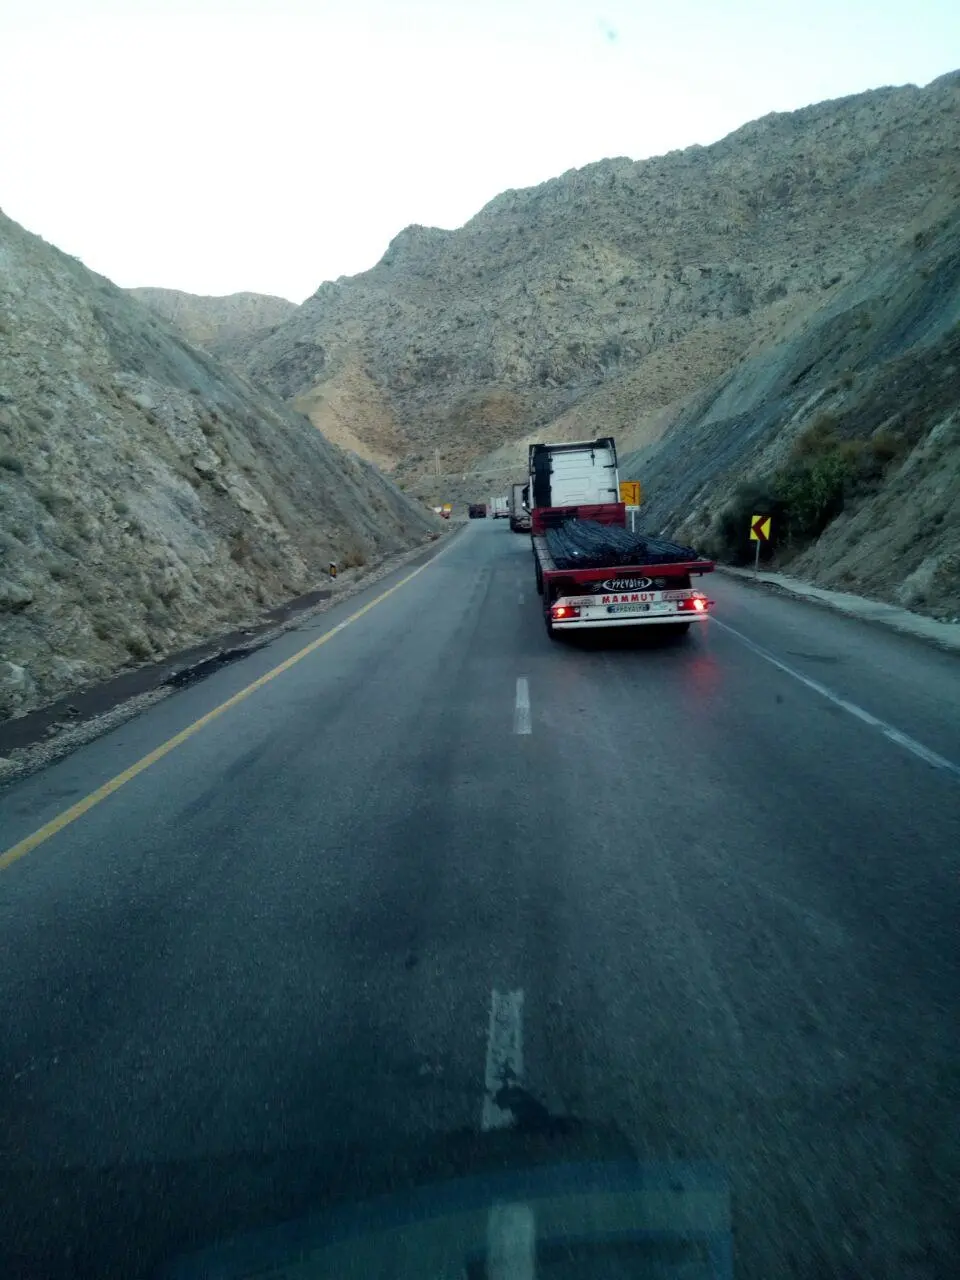 مشکلات مسیر جاده ای حاجی آباد بندرعباس + عکس